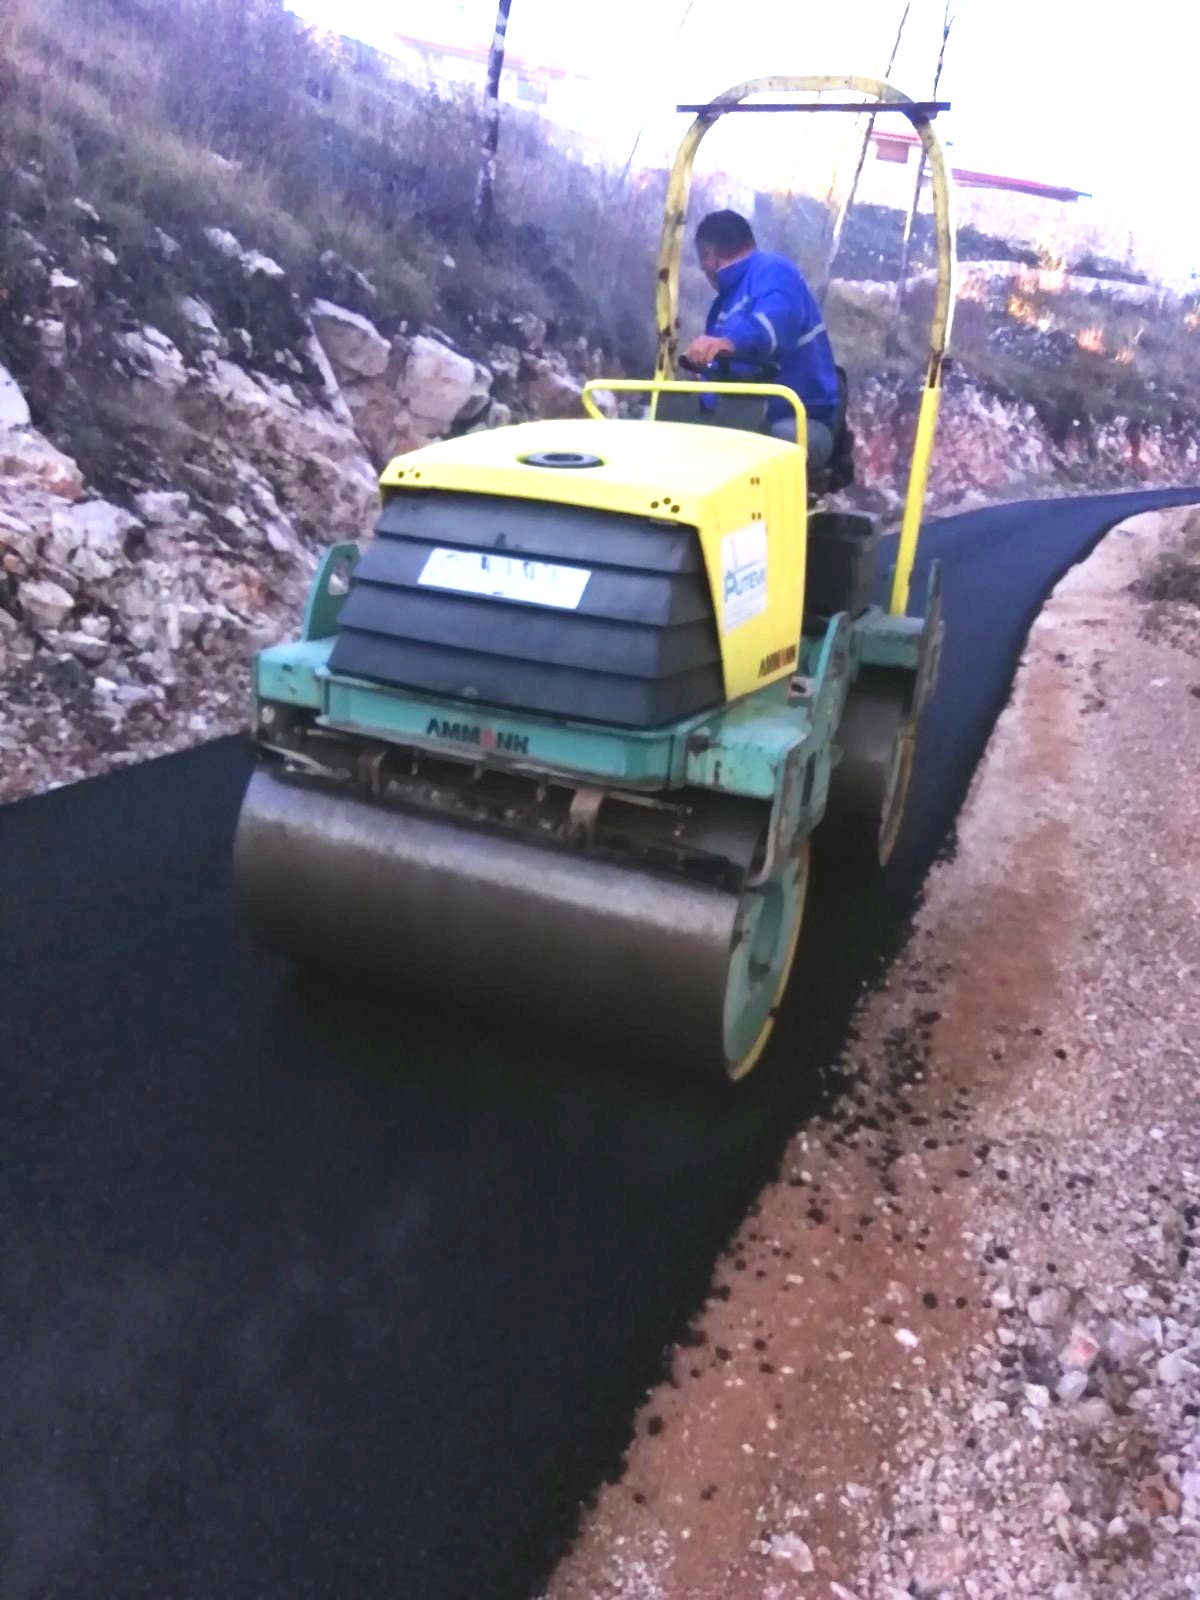 Putevi izvode radove na asfaltiranju putnog pravca Komani - Barjamovica u dužini od 6,5 km